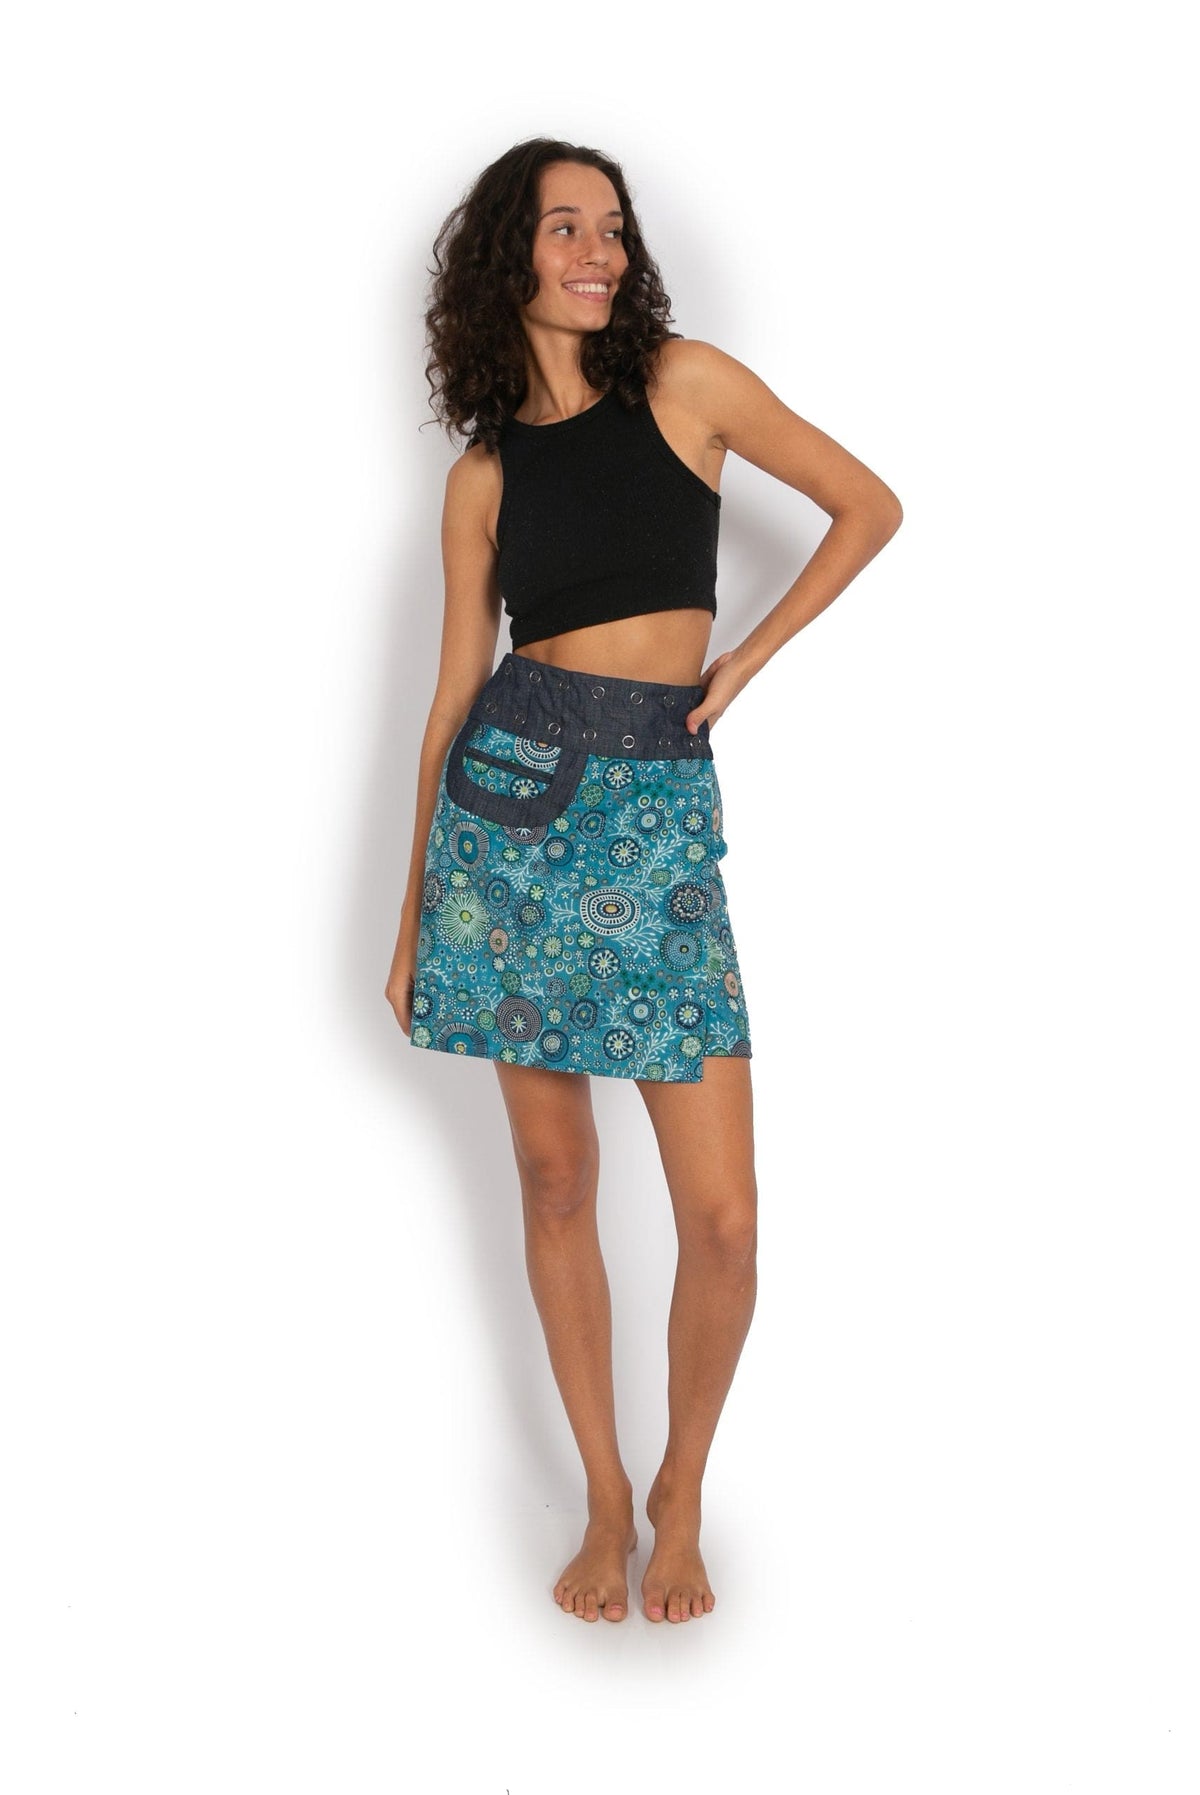 New Energy Reversible Skirt  - Coral Garden / Dragonfly Blue - OM Designs - Splash Swimwear  - June23, new arrivals, new womens, OM Designs, skirts - Splash Swimwear 